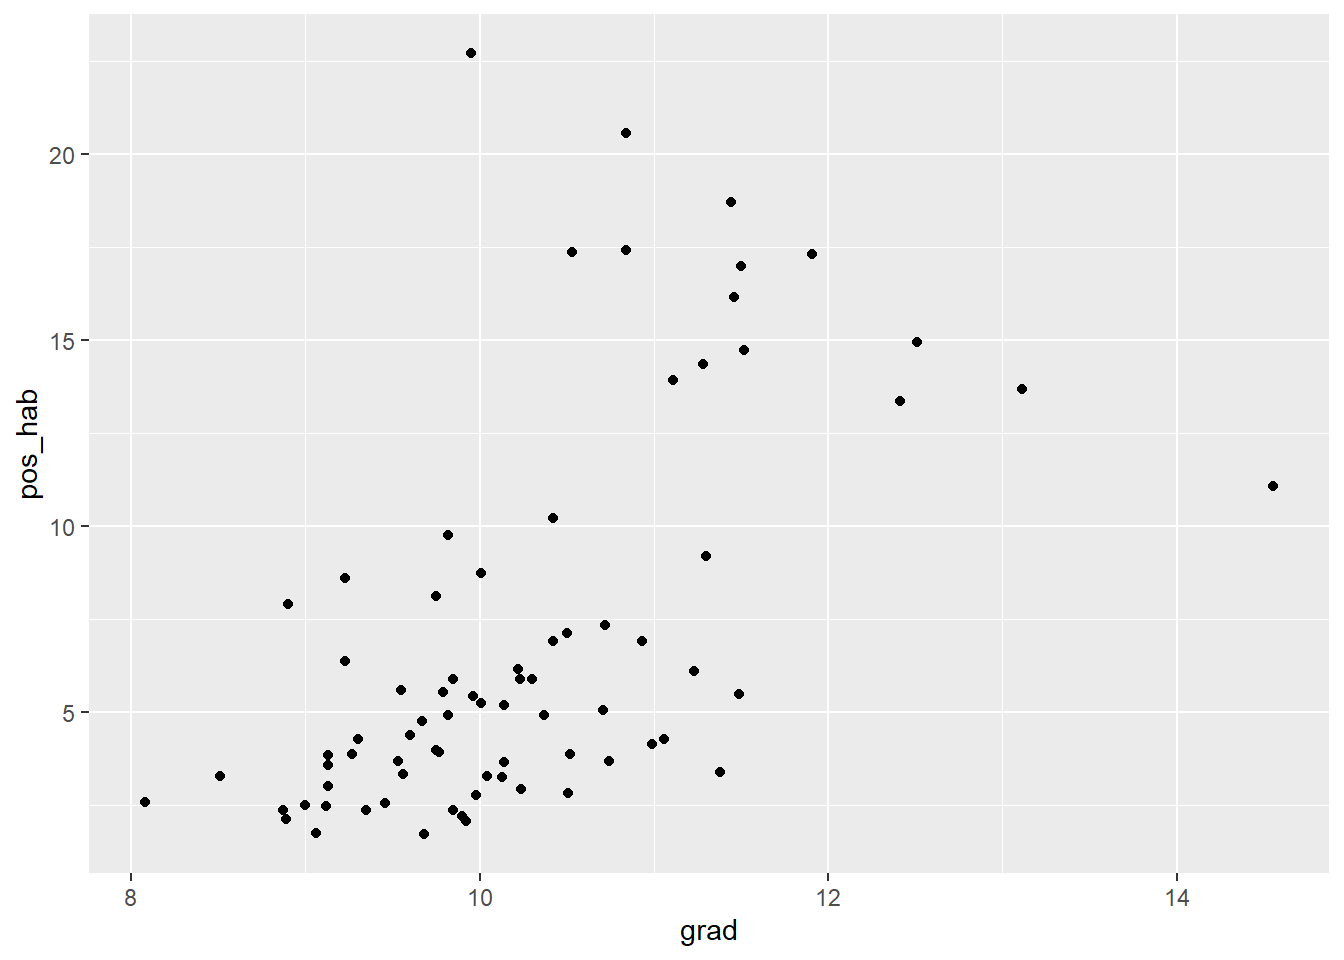 Gráfico de dispersión que representa la relación entre los casos positivos (pos_hab) en el eje x y el número promedio de grados cursados (grad) en y. El gráfico muestra la mayor agrupación de datos por debajo de 10 en pos_hab y 12 en grad